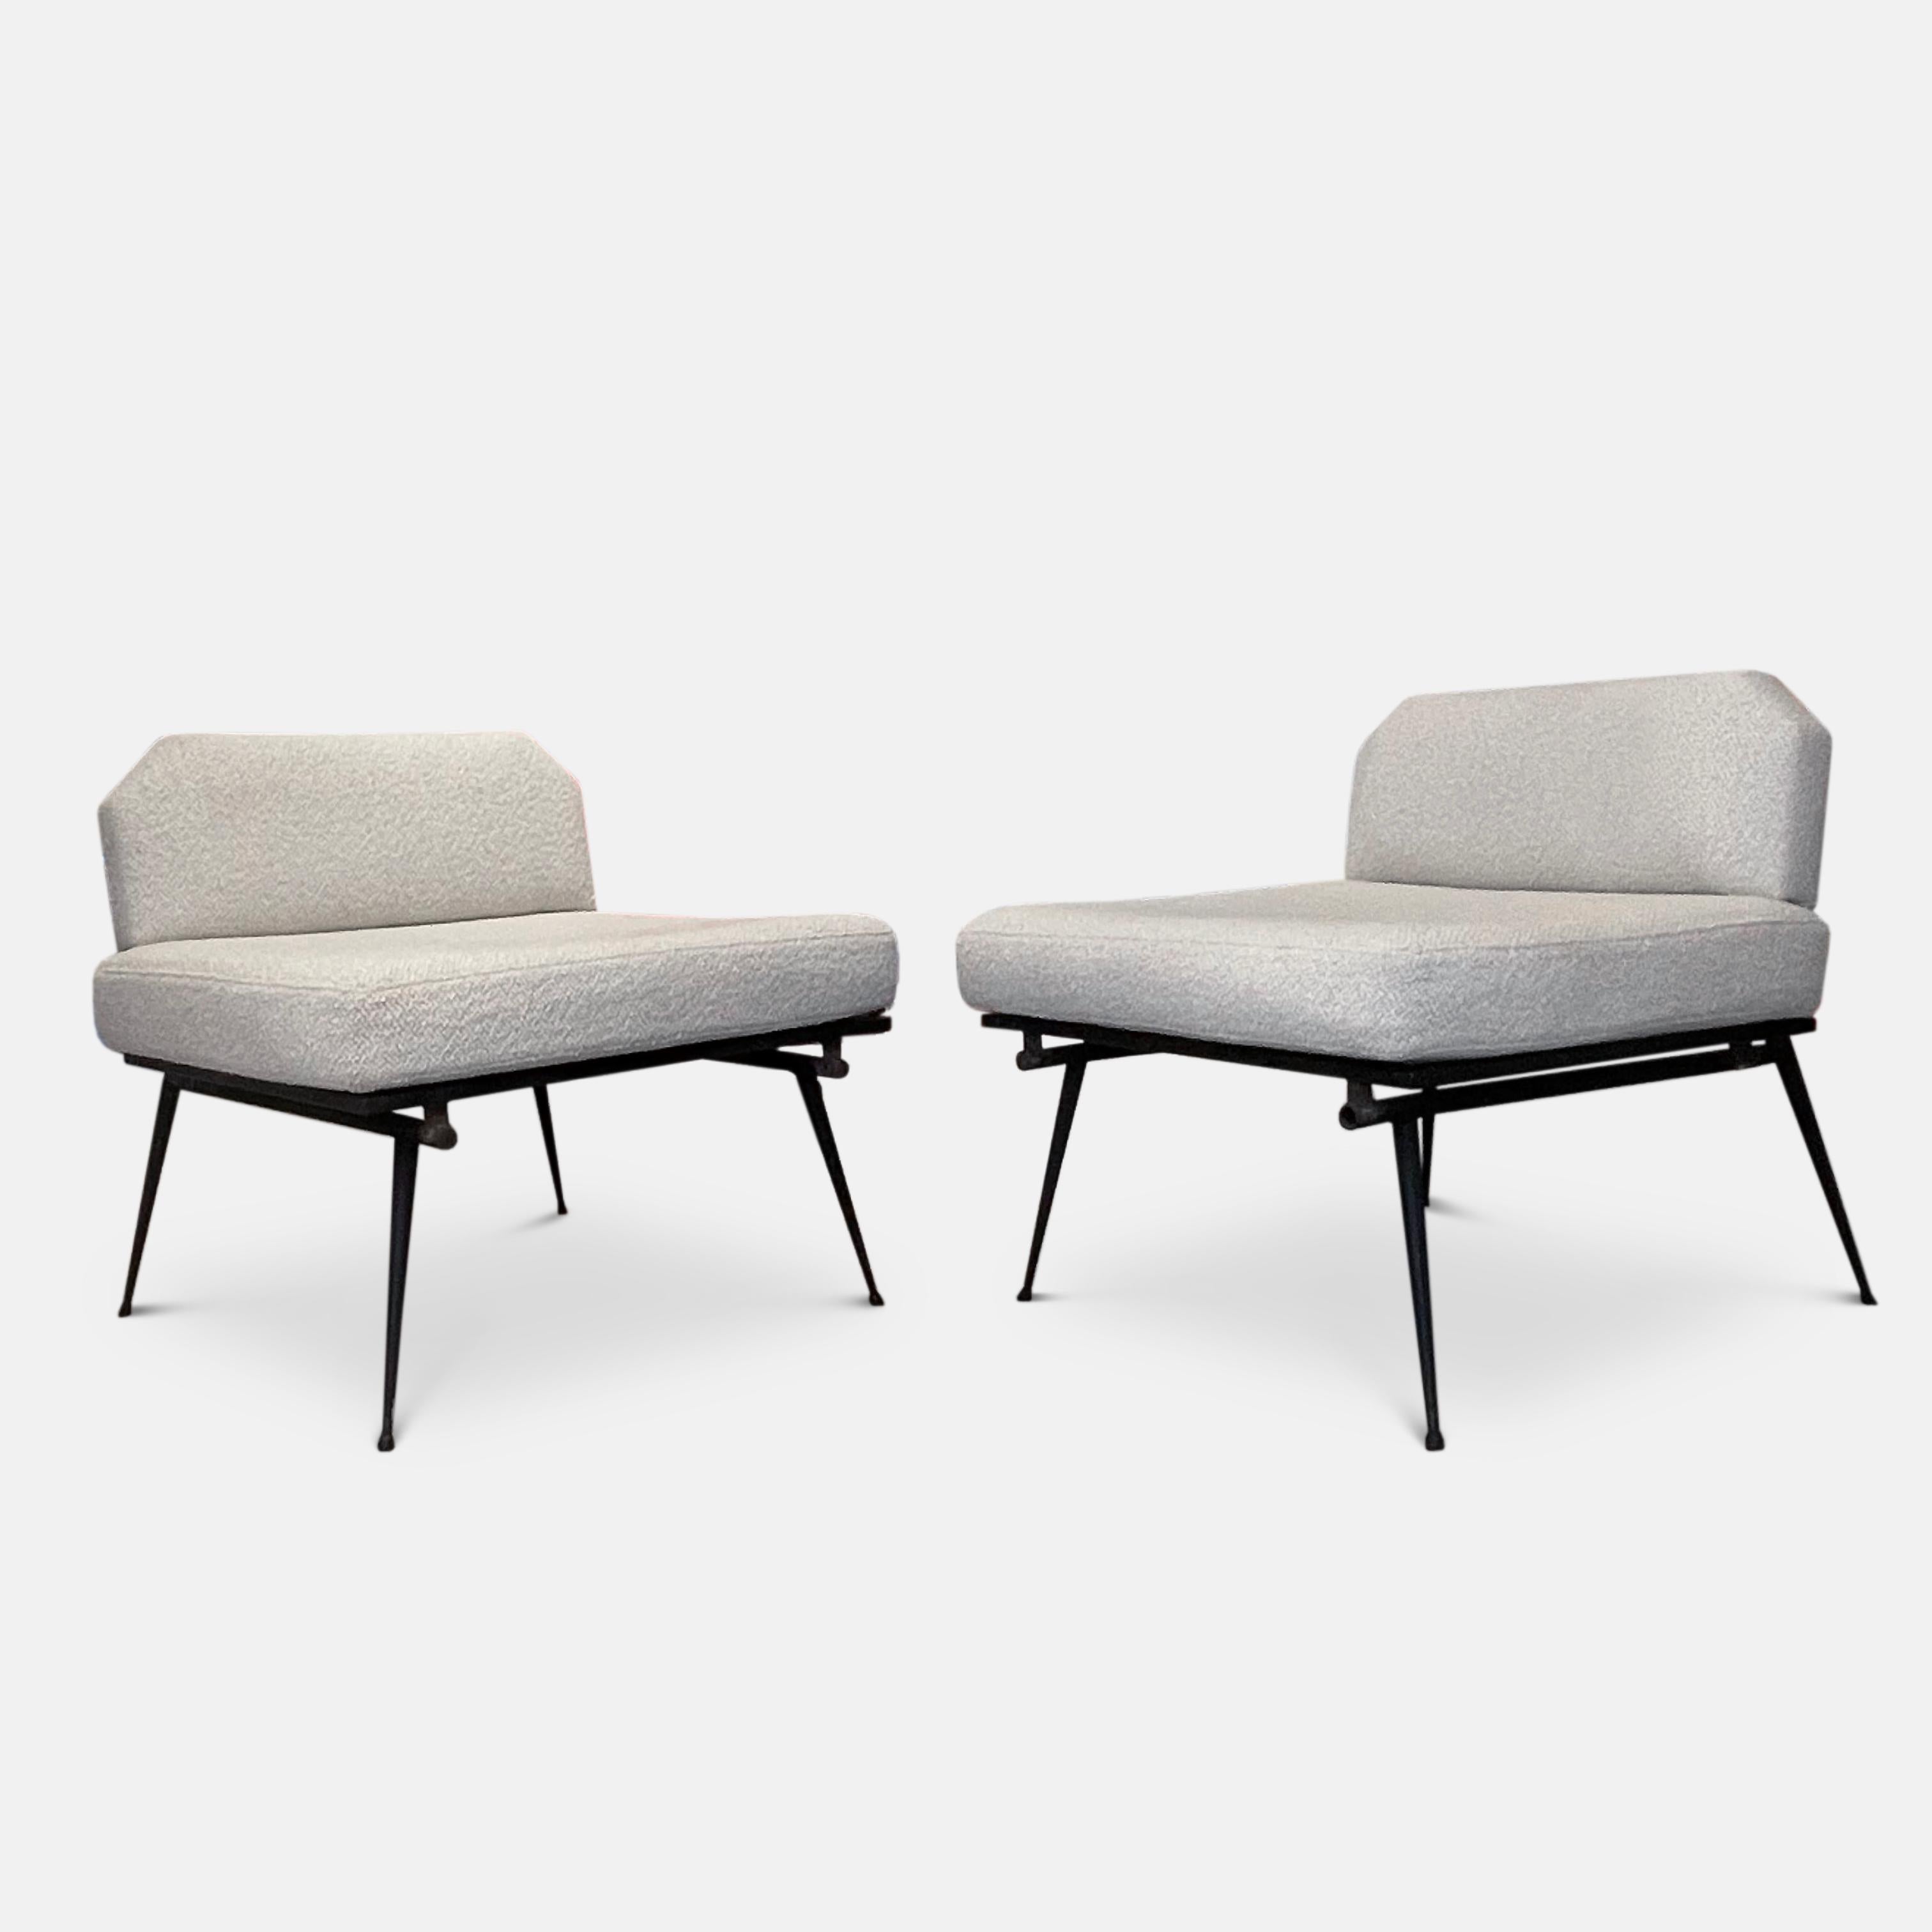 Ein atemberaubendes Paar italienischer Sessel aus den 1950er Jahren in der Art von Studio bbpr. 
Auf einem minimalen Metallgestell mit spitz zulaufenden Beinen und dekorativ abgewinkelten Rückenlehnen wurde dieses Stuhlpaar neu mit einem Dedar